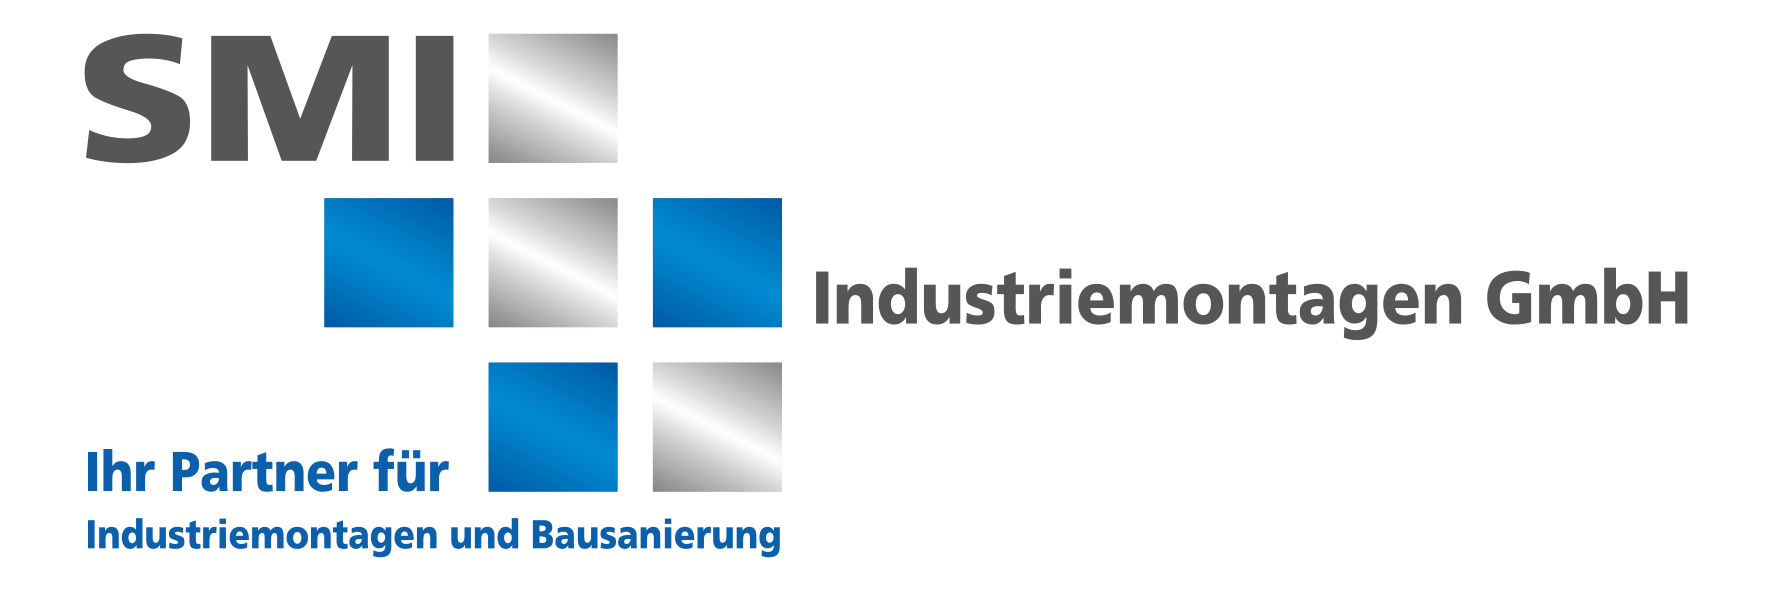 SMI GmbH